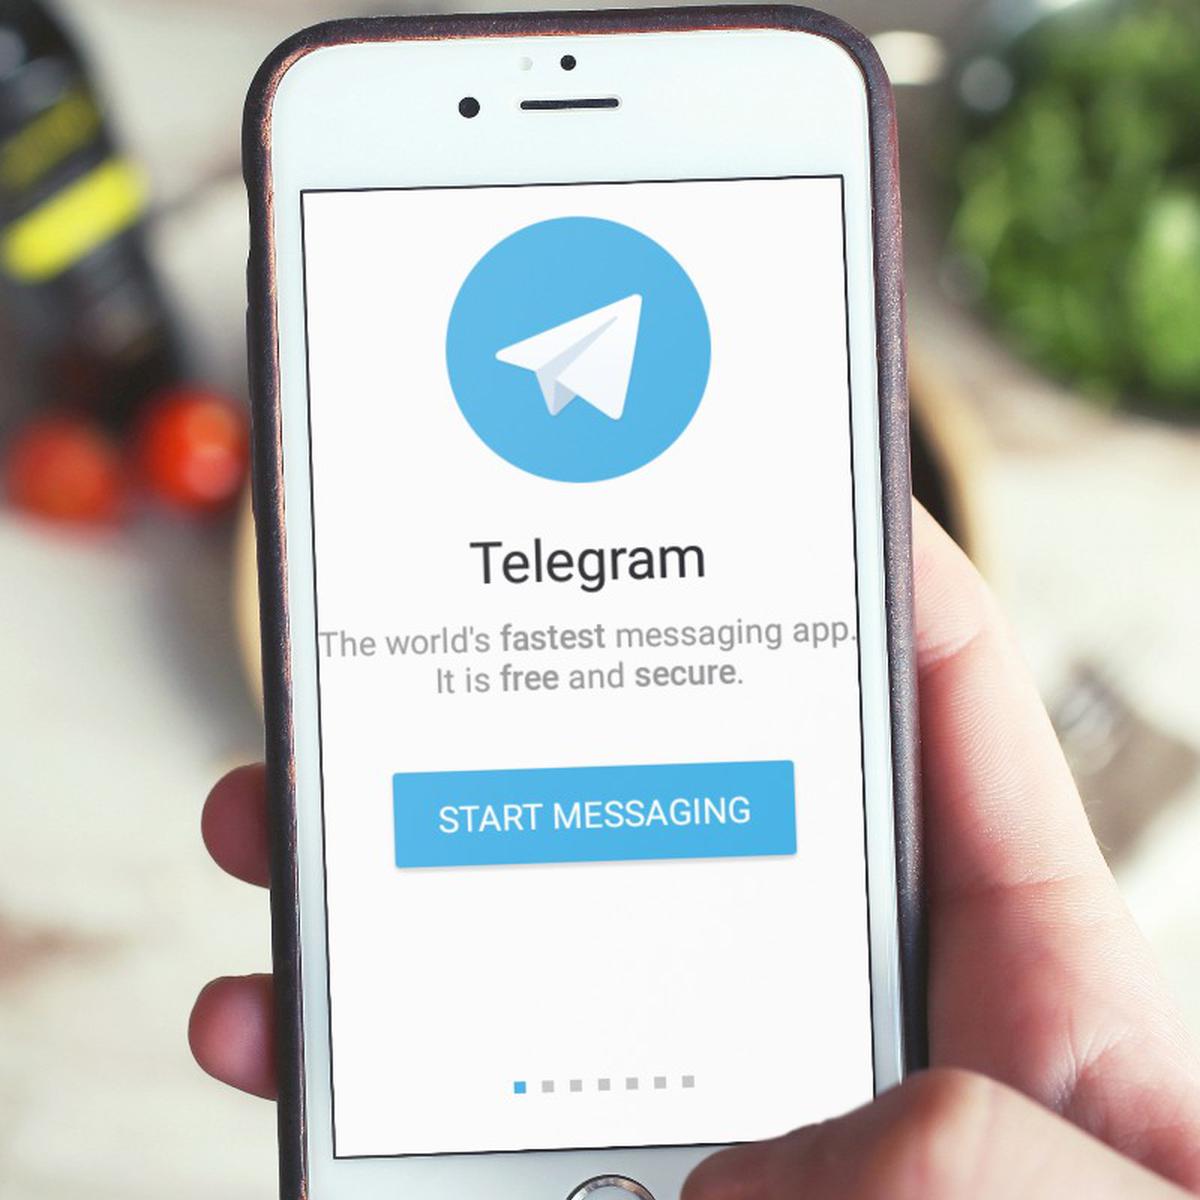 telegram-web-como-acceder-y-funciones-y-trucos-para-sacarle-el-maximo-partido